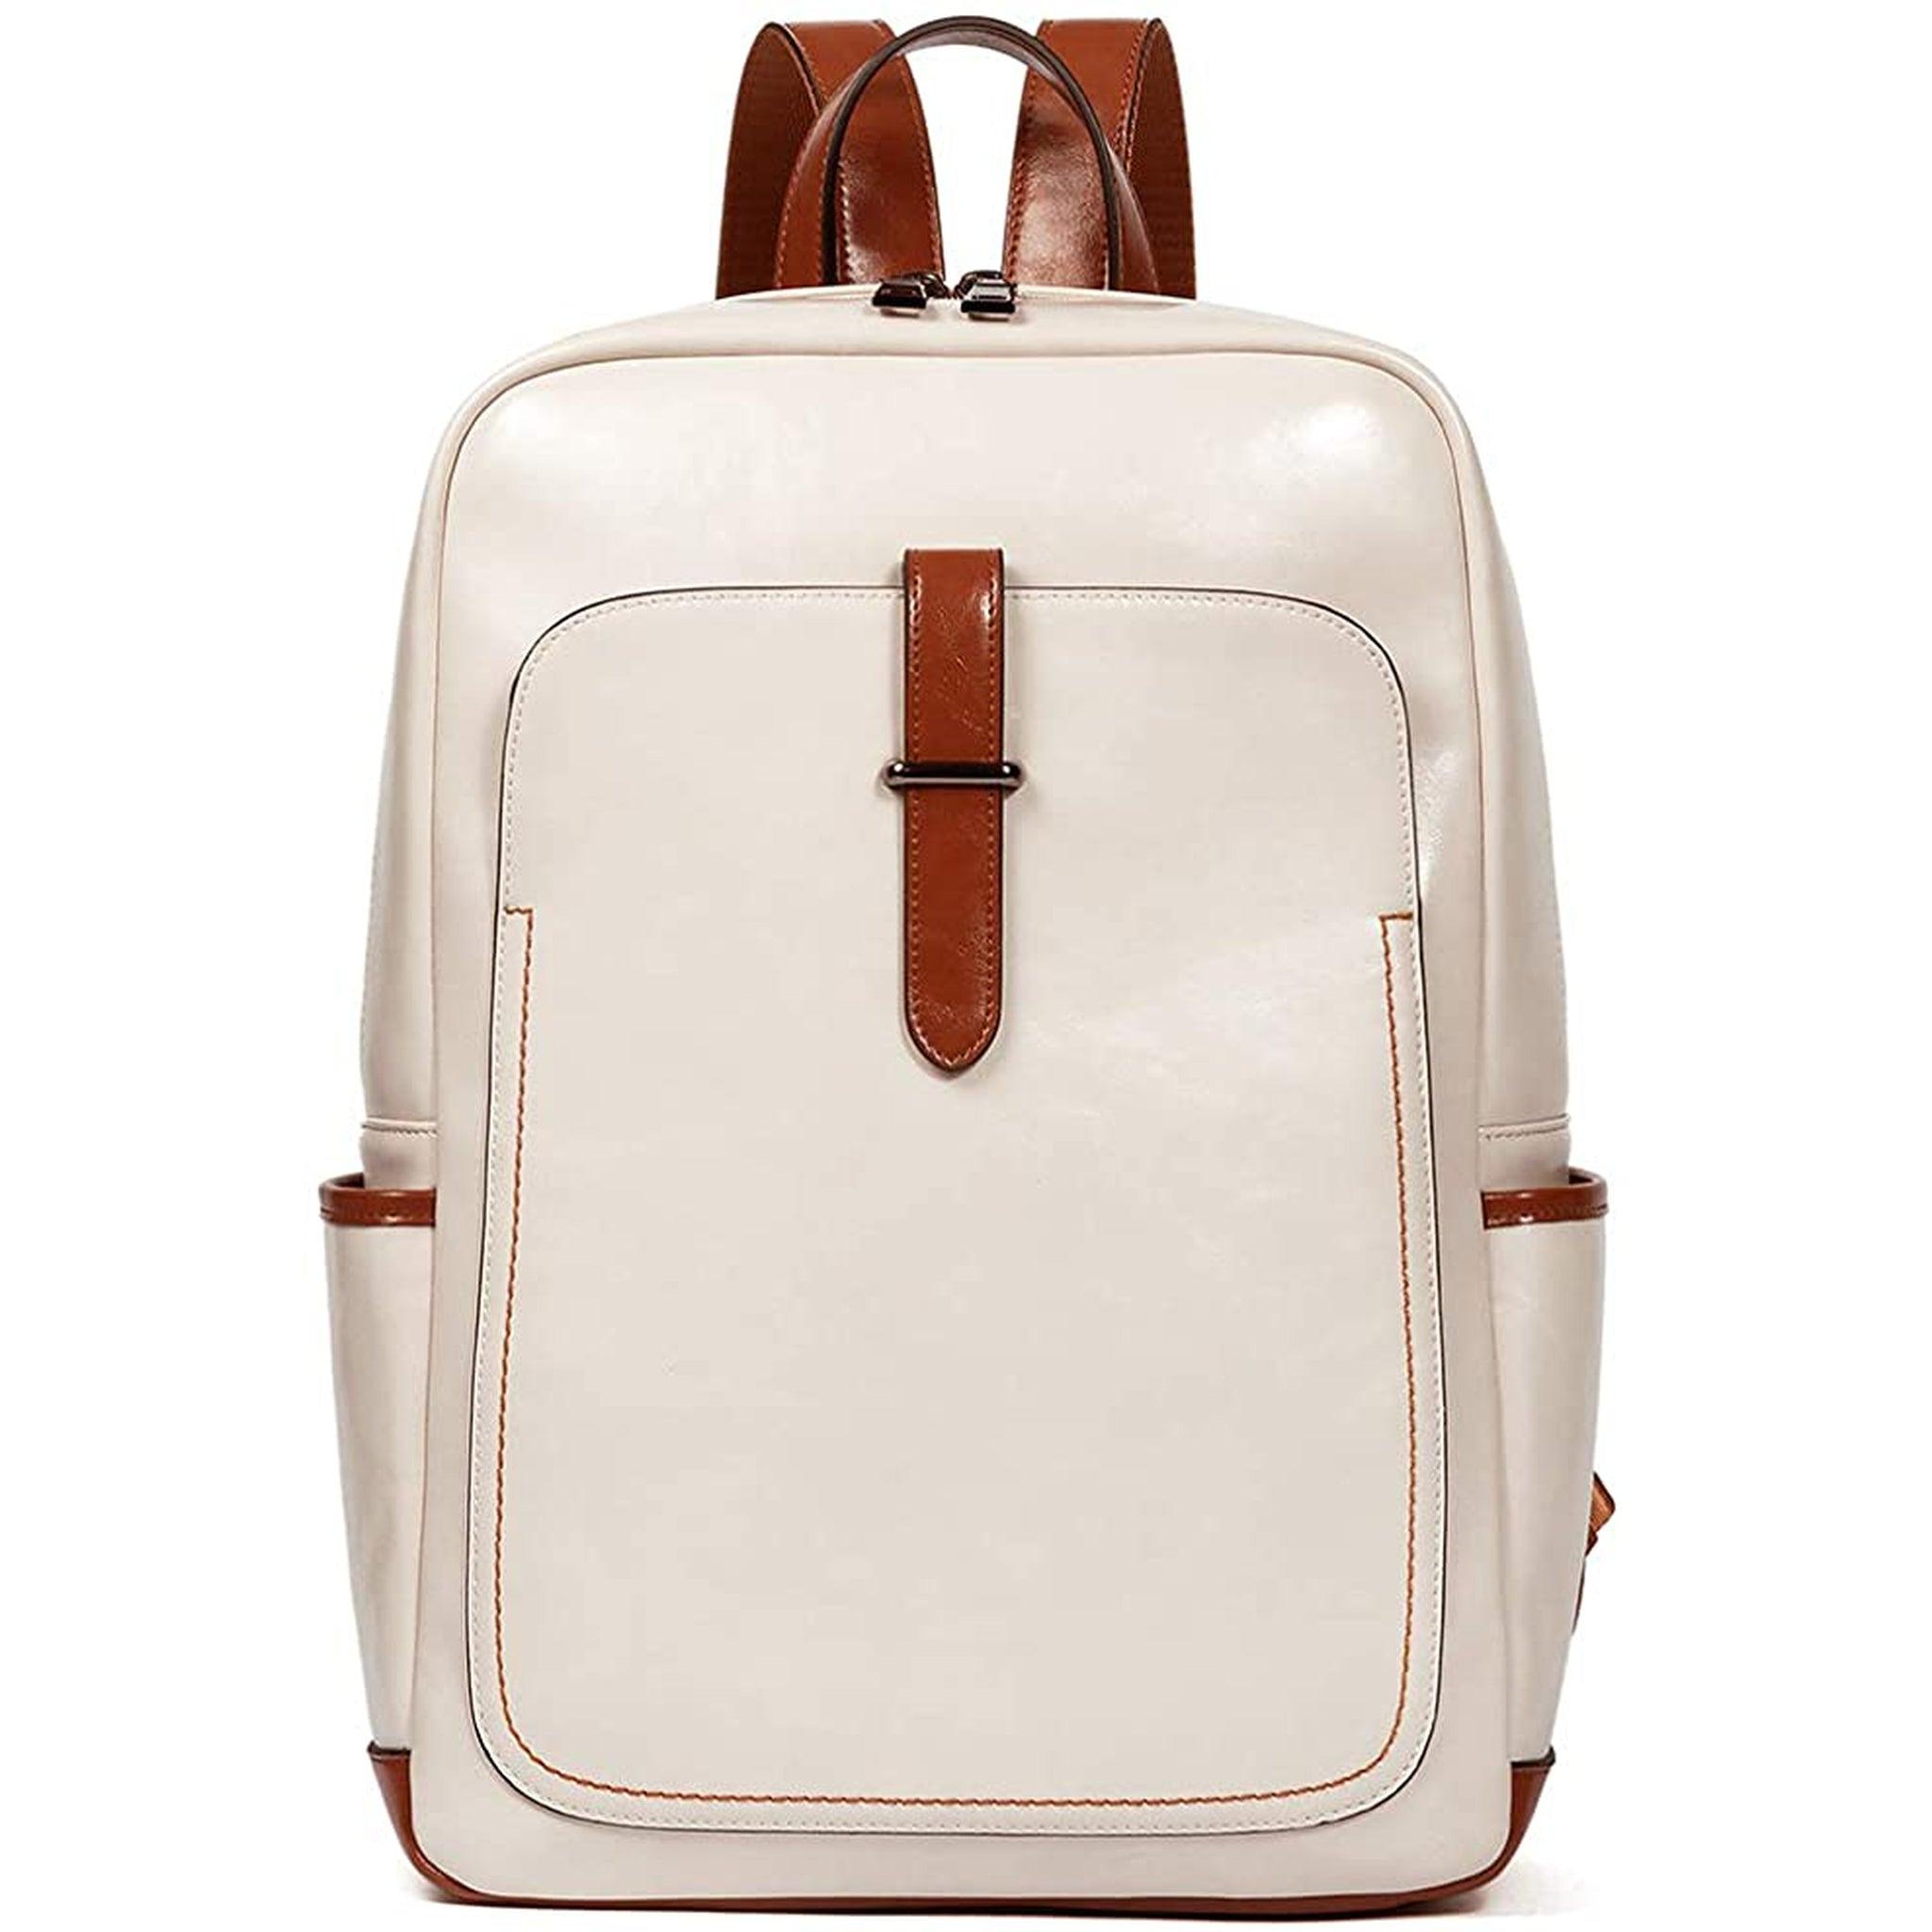 Reinforced Shoulder Straps Backpack - FR Fashion Co.